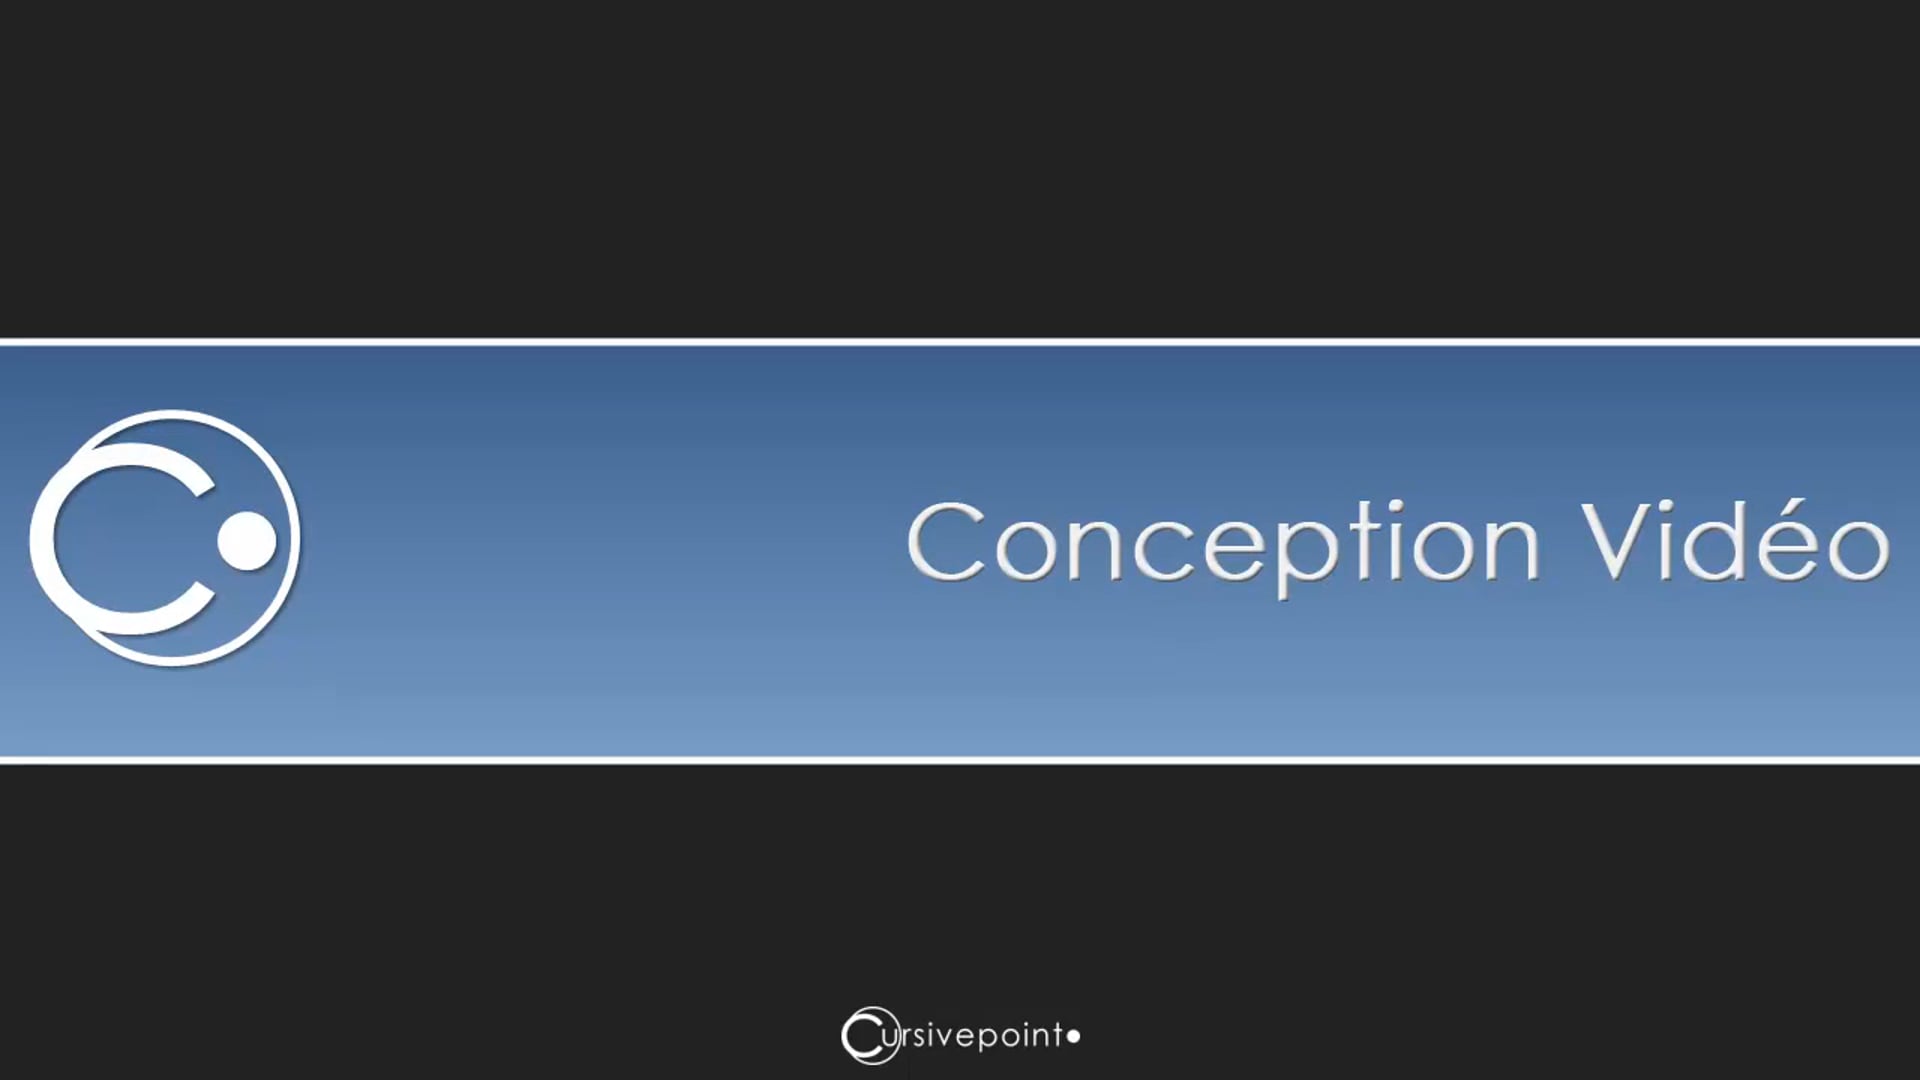 Conception (FRA - 3:06)